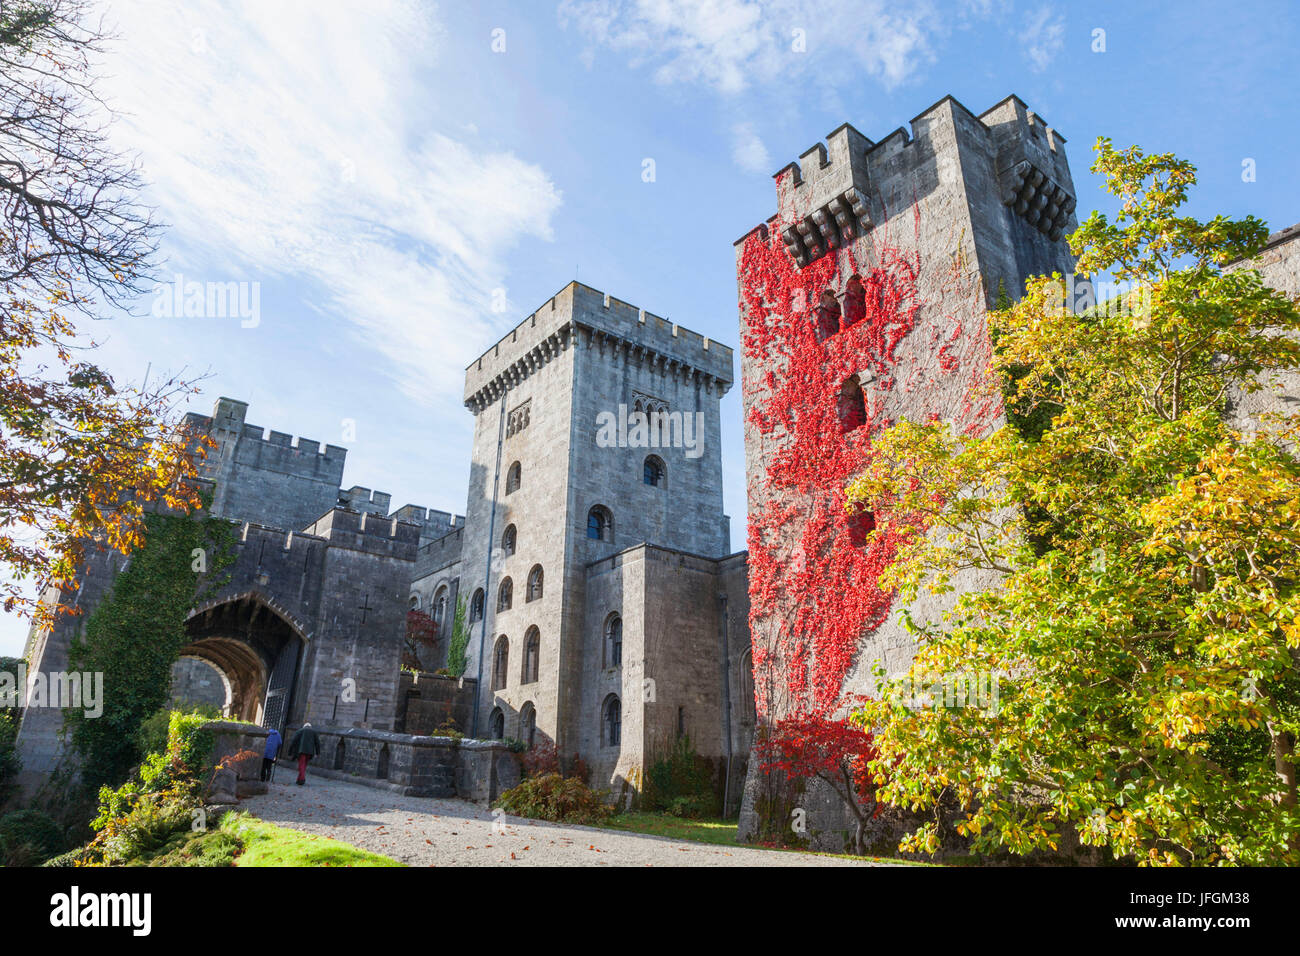 Wales, Bangor, Penrhyn Castle Stock Photo